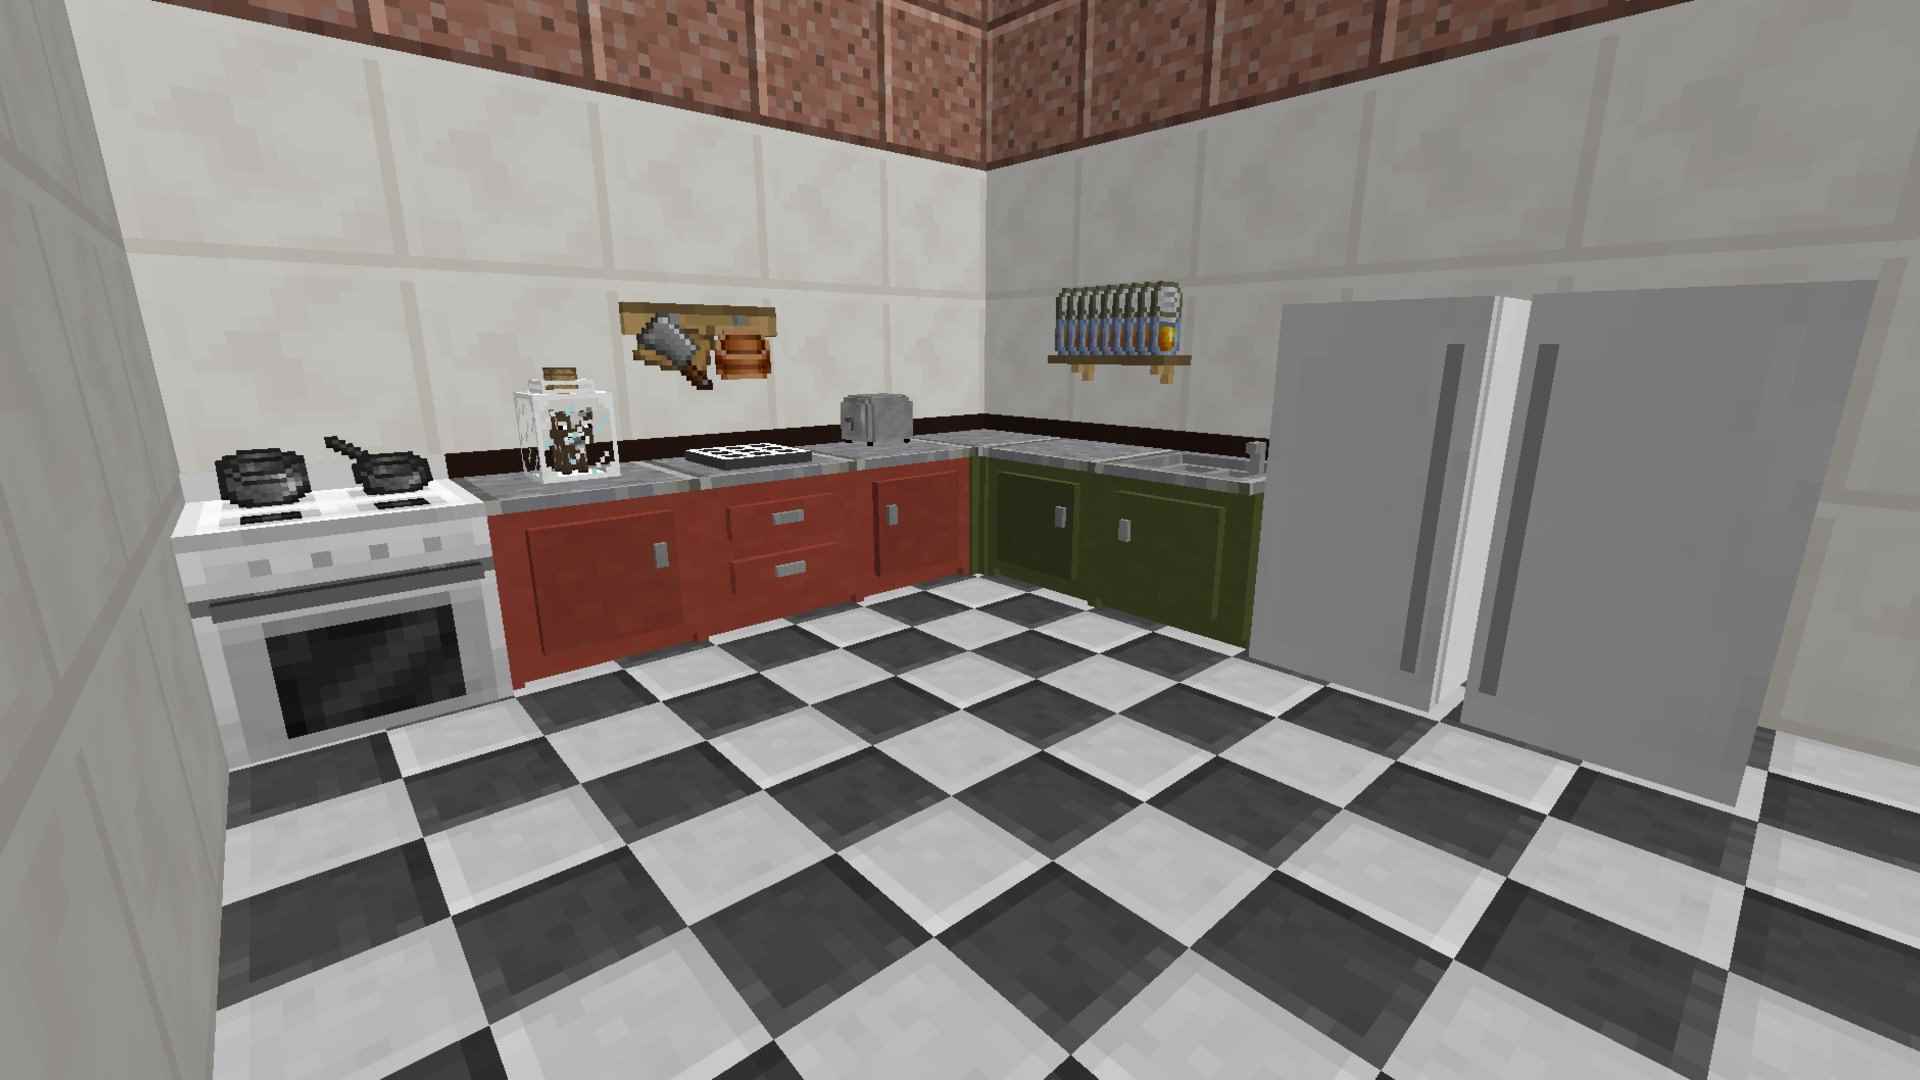 En iyi yemek pişirme oyunları: Minecraft Cooking with Blockheads modunda ocak, bıçak rafı, ekmek kızartma makinesi ve baharatlarla tamamlanmış bir mutfak kurulumu